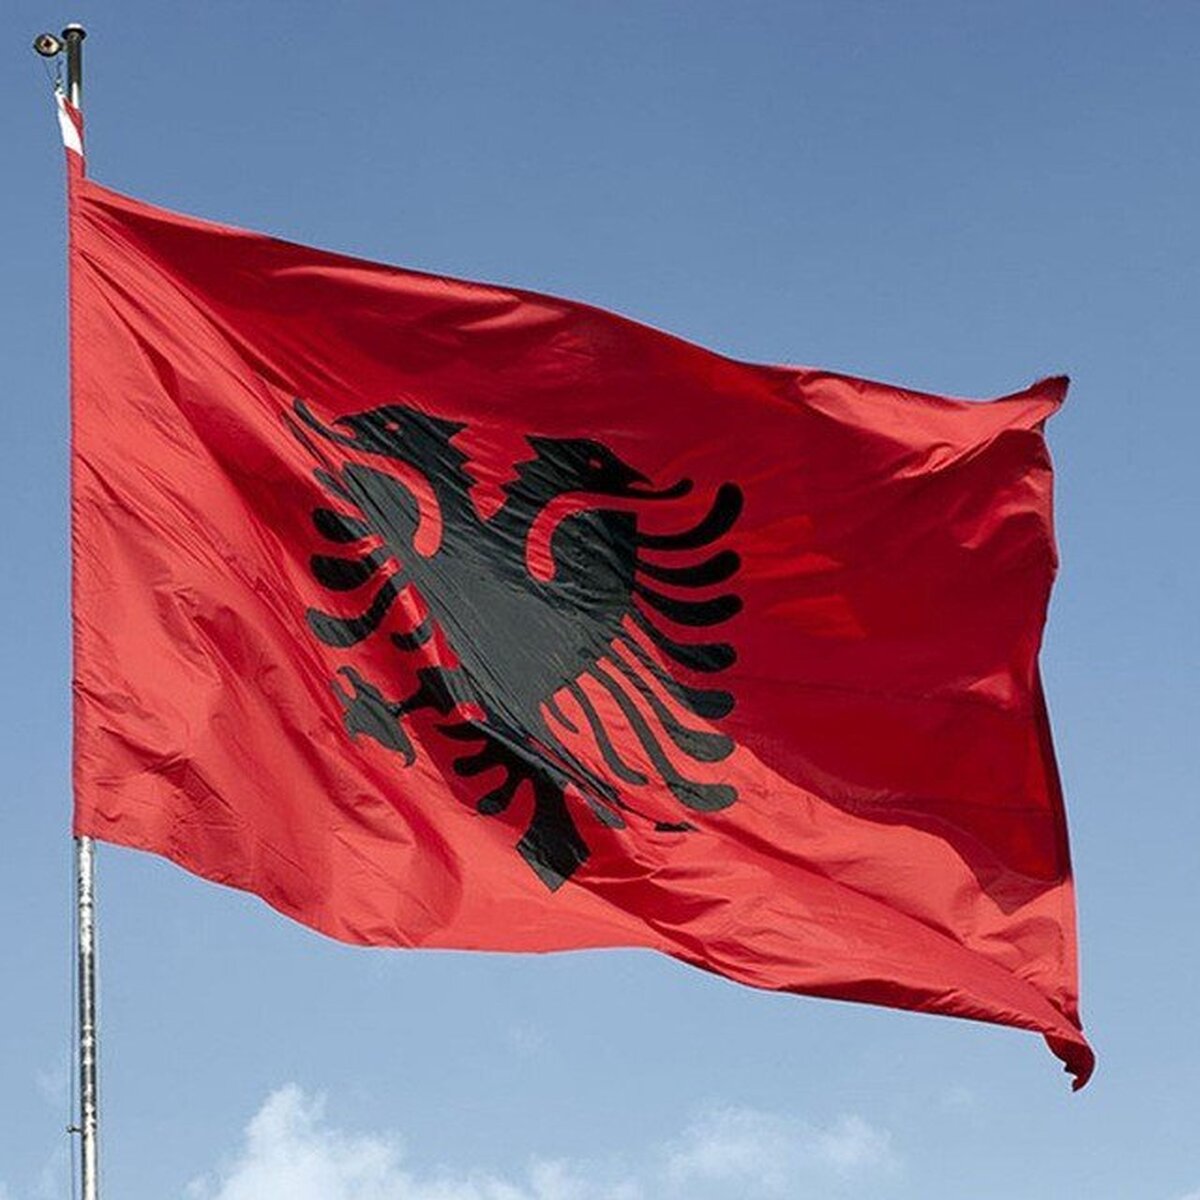 بازجویی از اعضای مجاهدین خلق در آلبانی